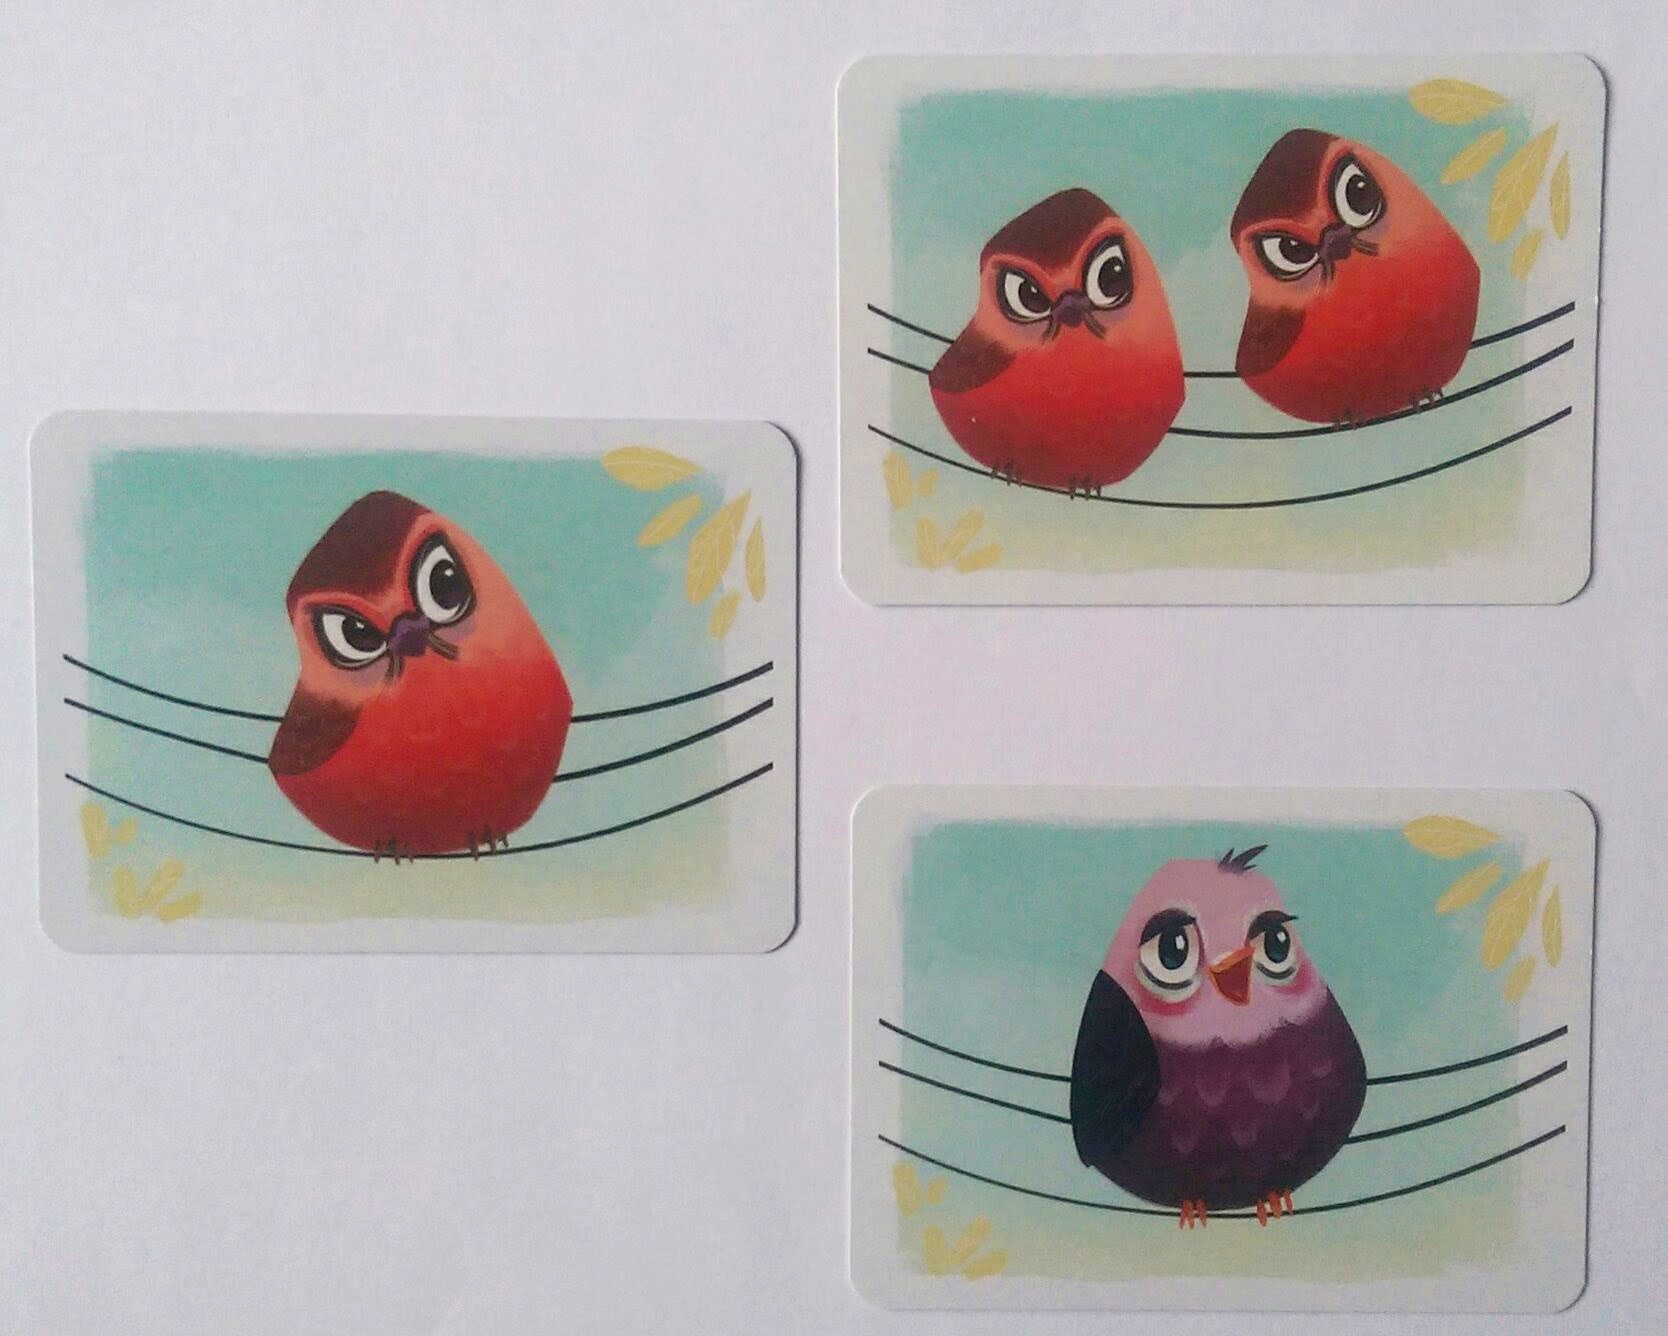 Kortet med den ene røde fugl har på den modsatte side enten en fugl i en anden farve eller to eller tre røde fugle.